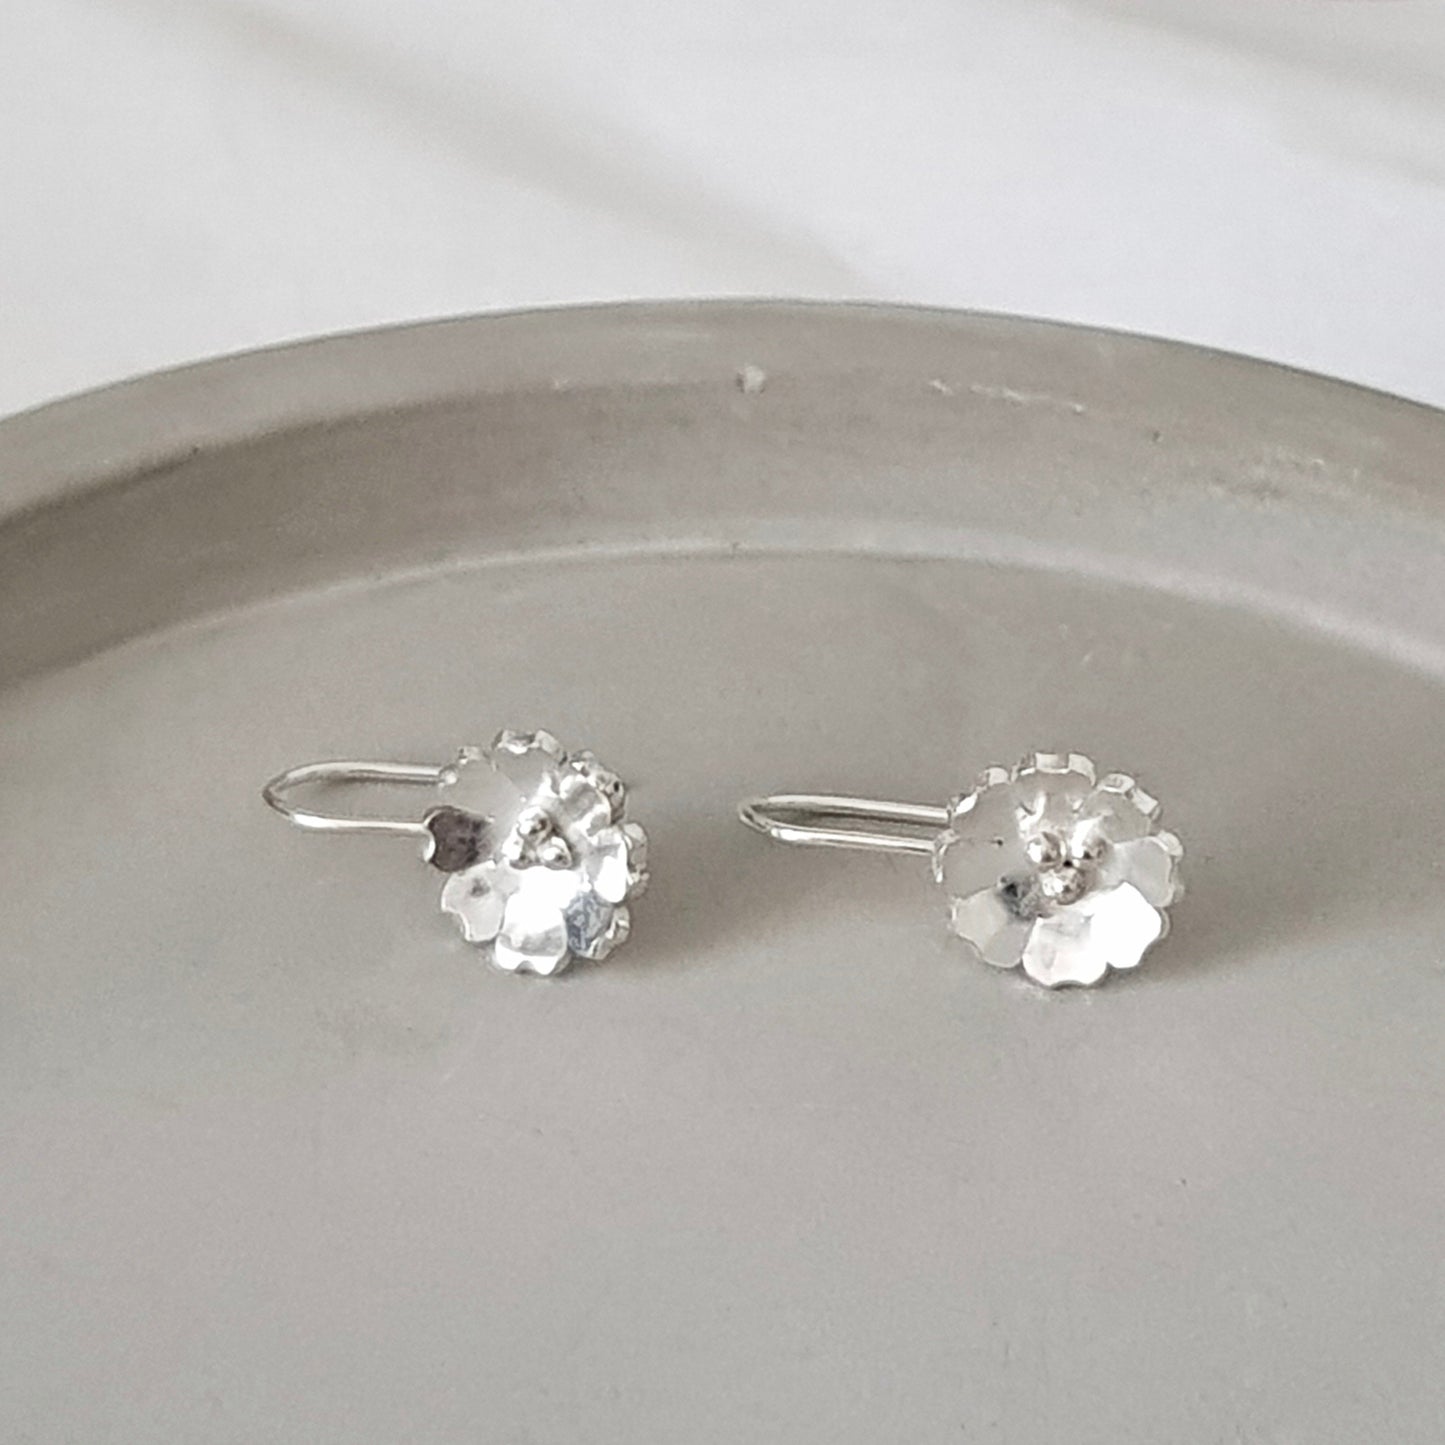 Dangly Silver Flower Hook Earrings, Handmade by Anna Calvert Jewellery in the UK